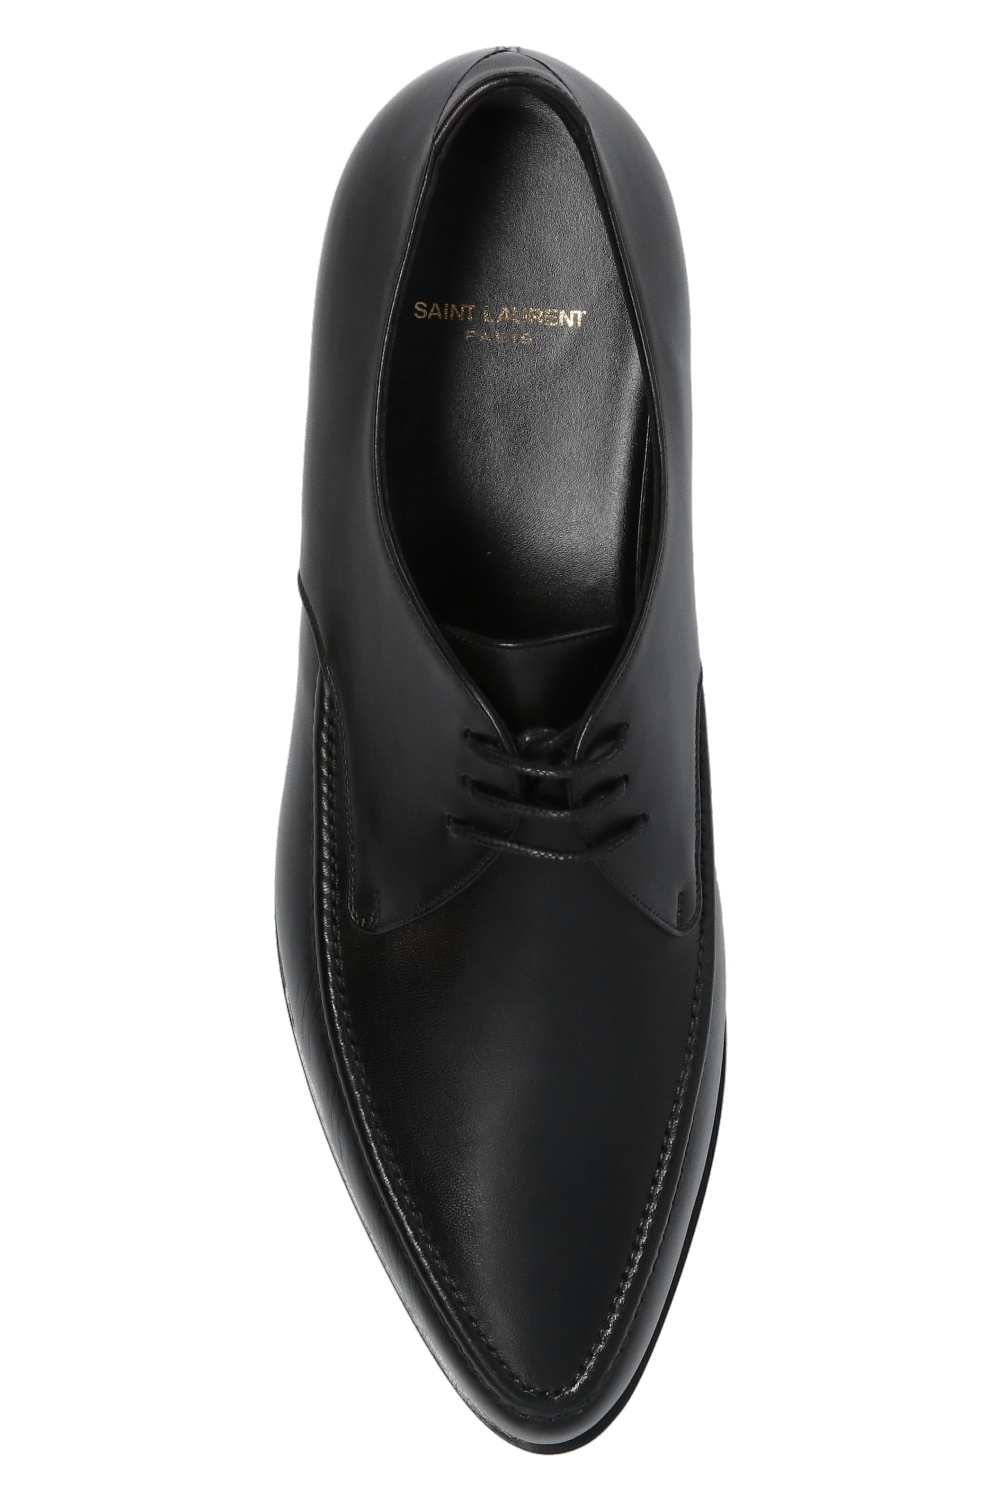 Louis Vuitton Minister Derby Shoes - Vitkac shop online